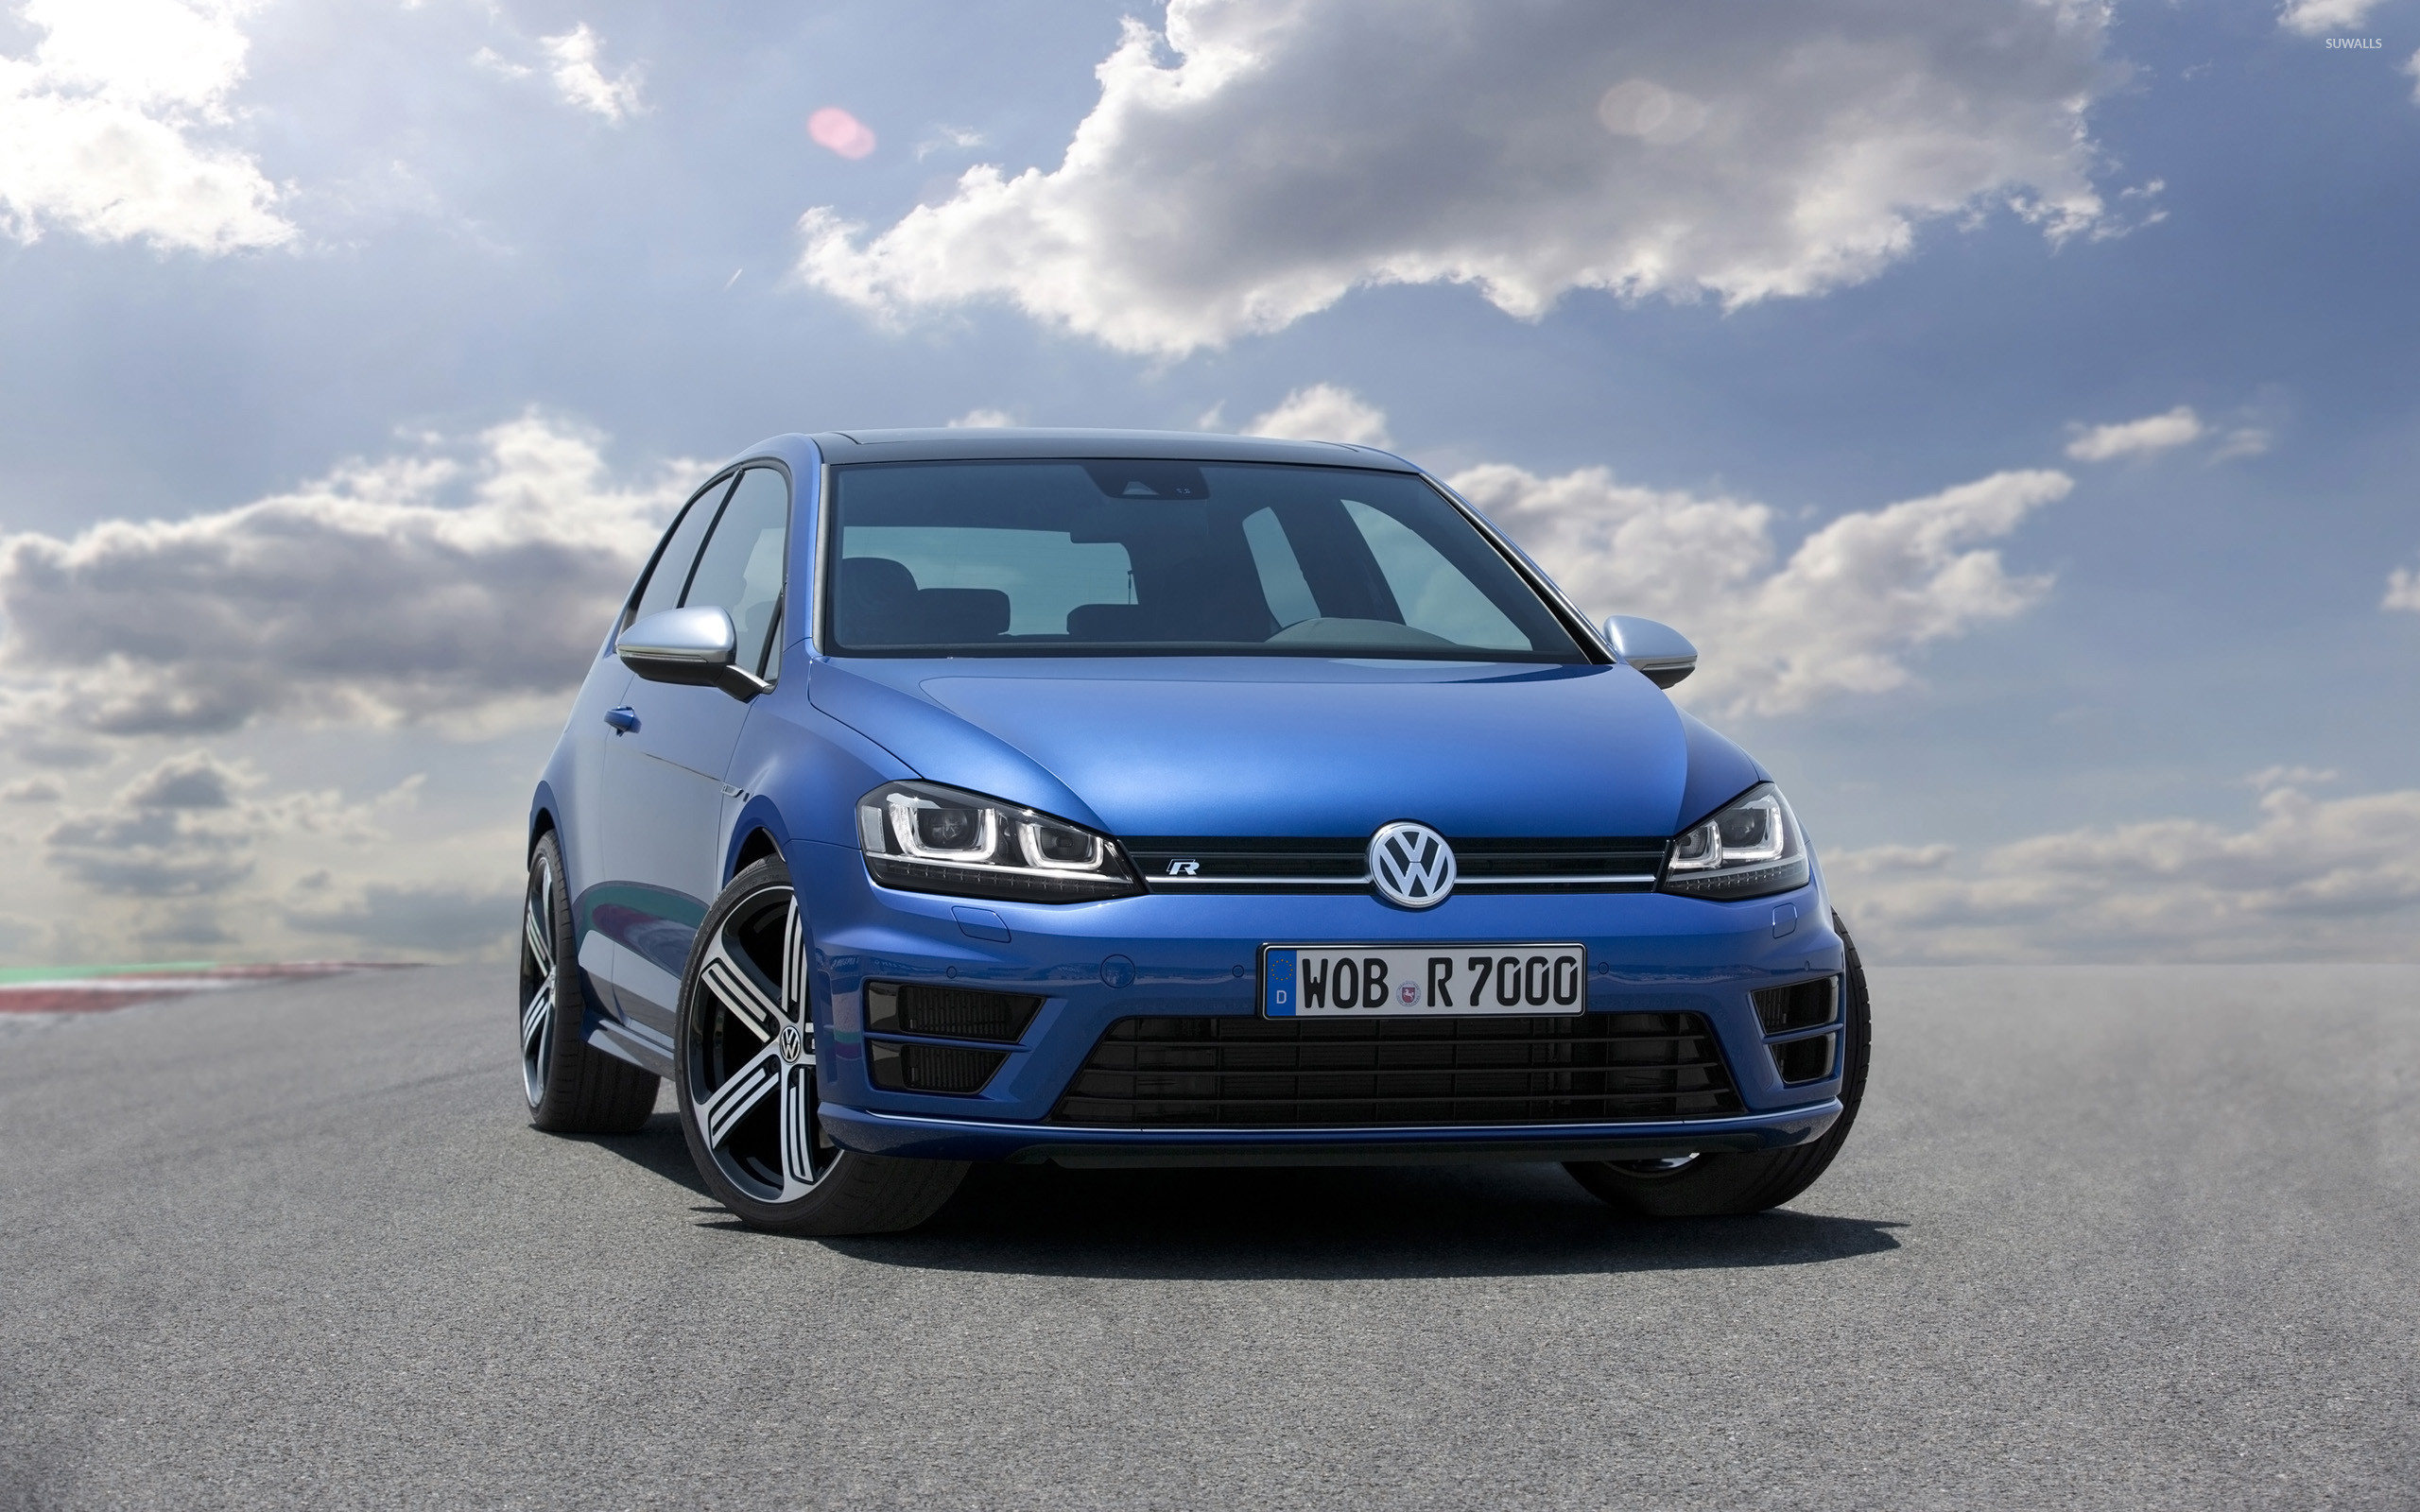 2560x1600 2014 Volkswagen Golf R wallpaper